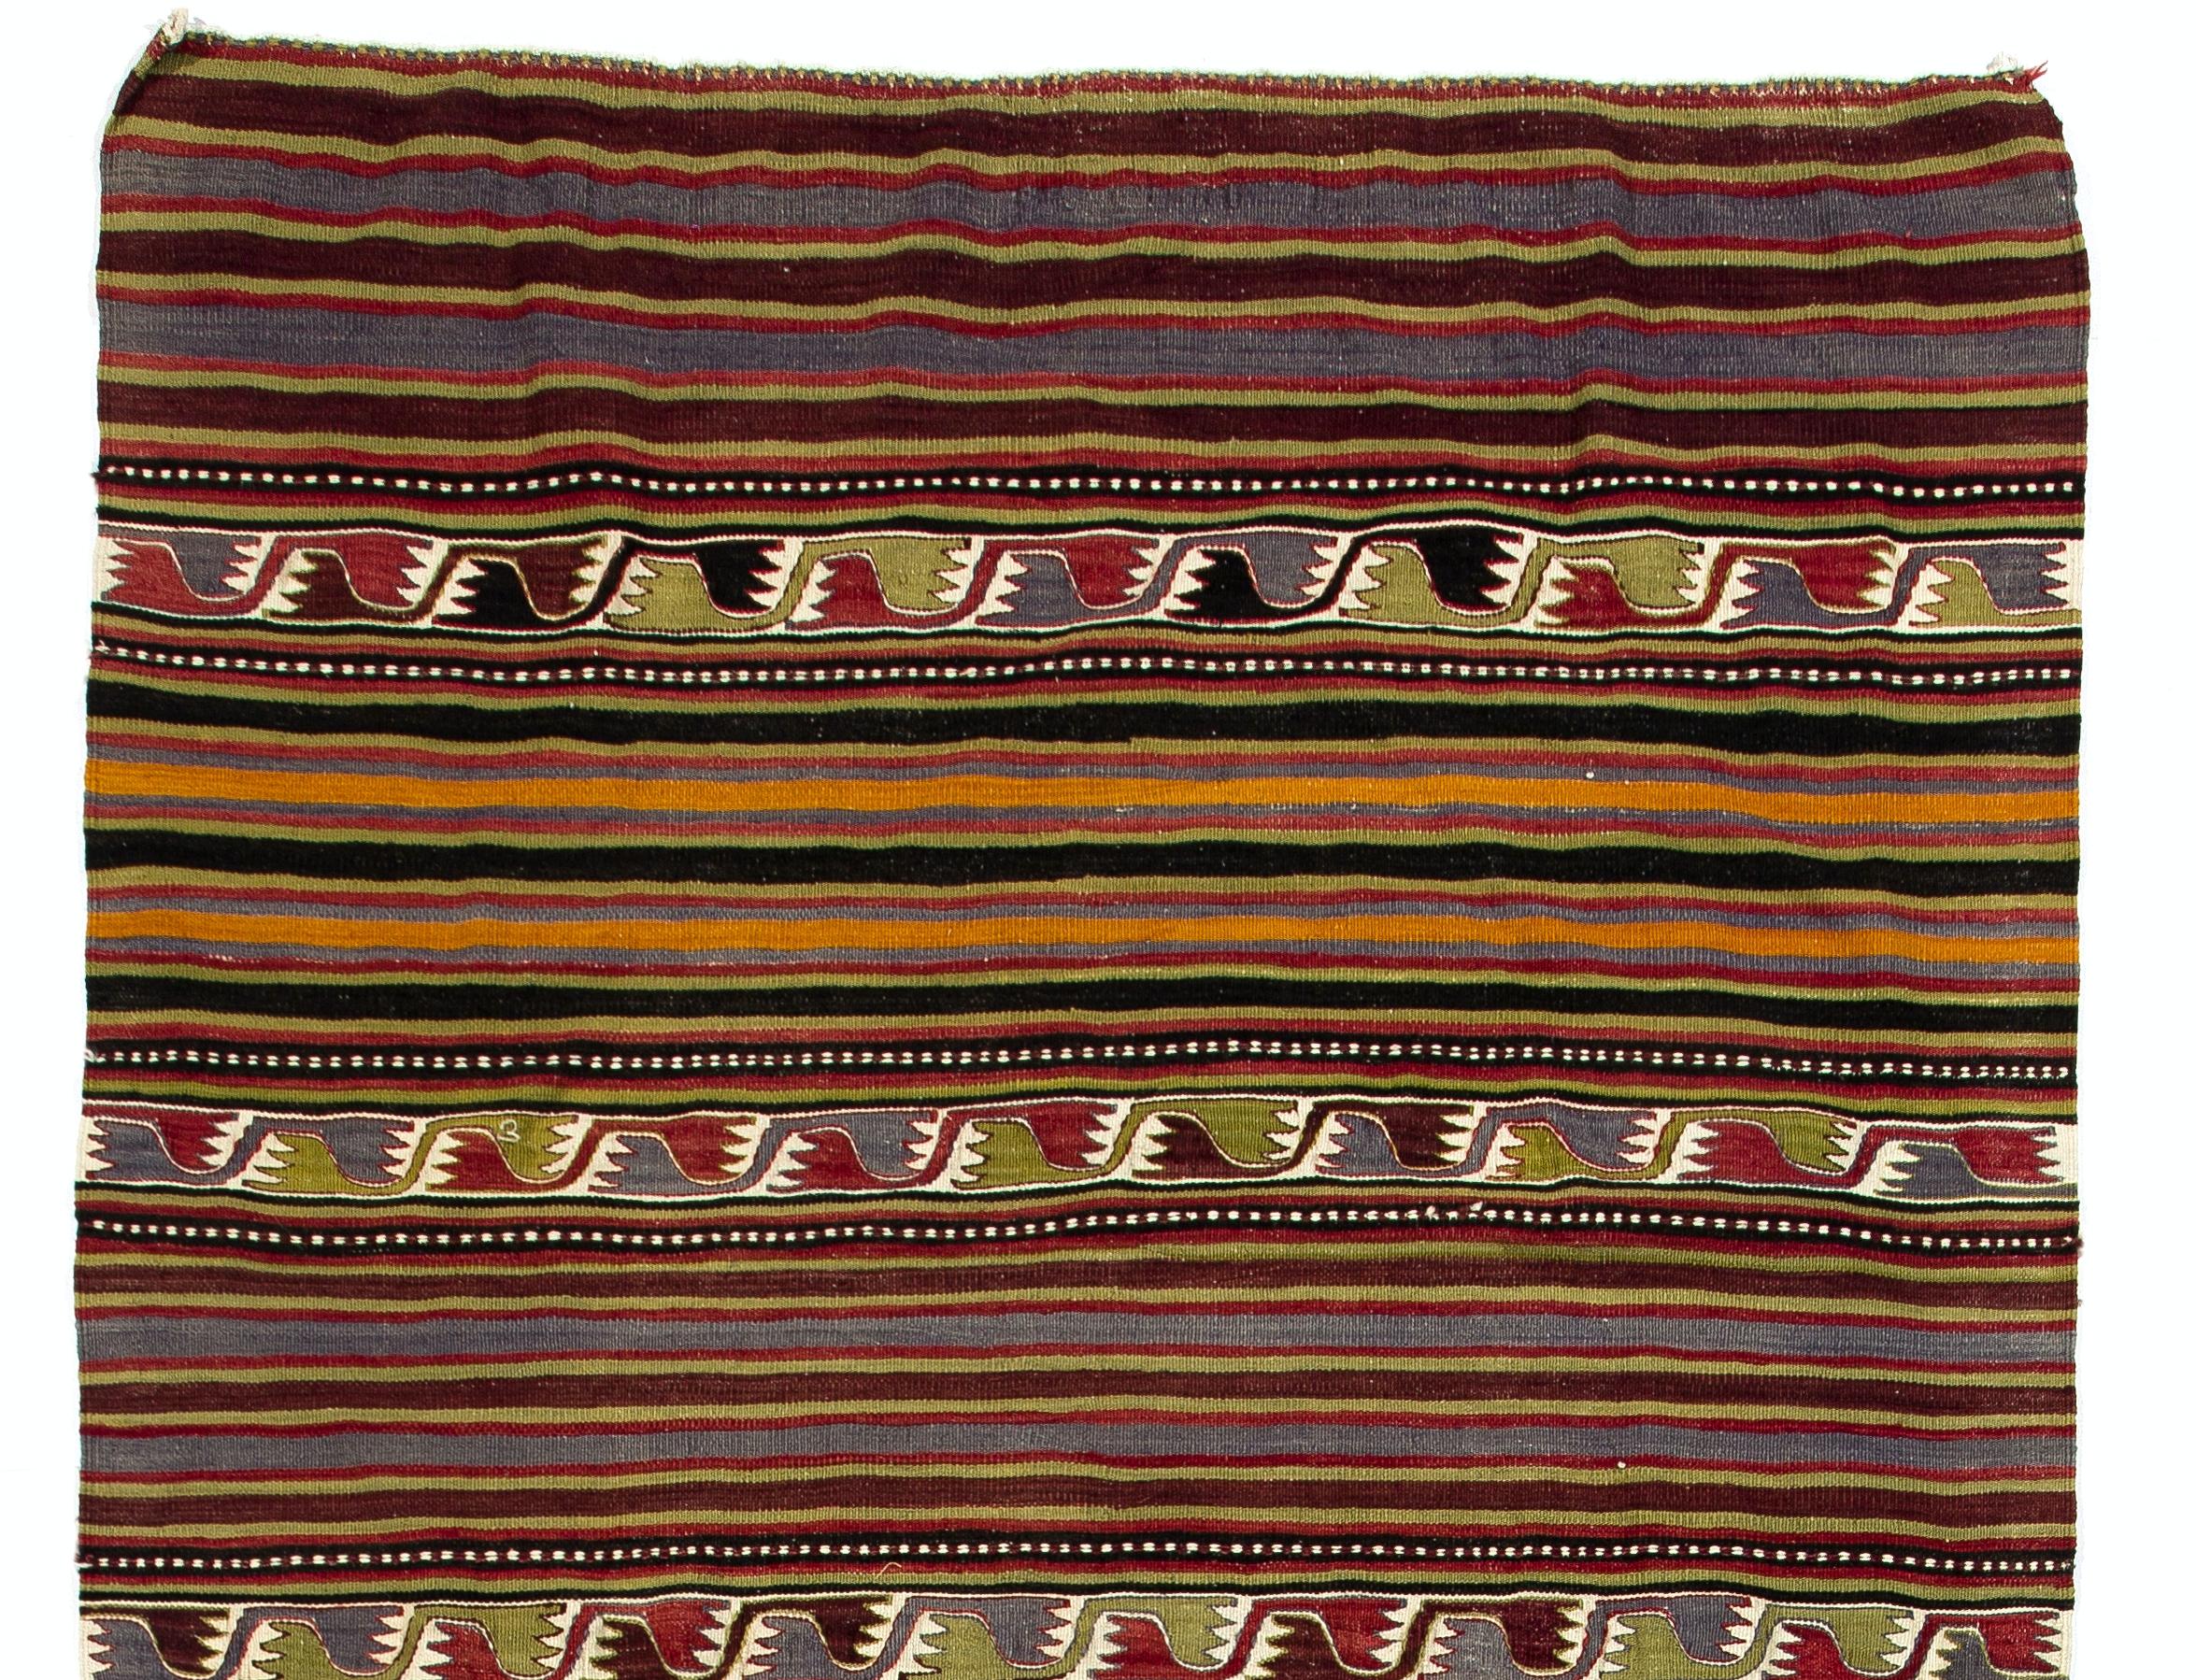 Cet authentique Kilim tissé à la main en Turquie centrale a été fabriqué par les nomades pour être utilisé comme revêtement de sol dans leurs tentes ou maisons d'été vers le milieu du 20e siècle. Il est fait de laine multicolore. Mesures : 5,2 x